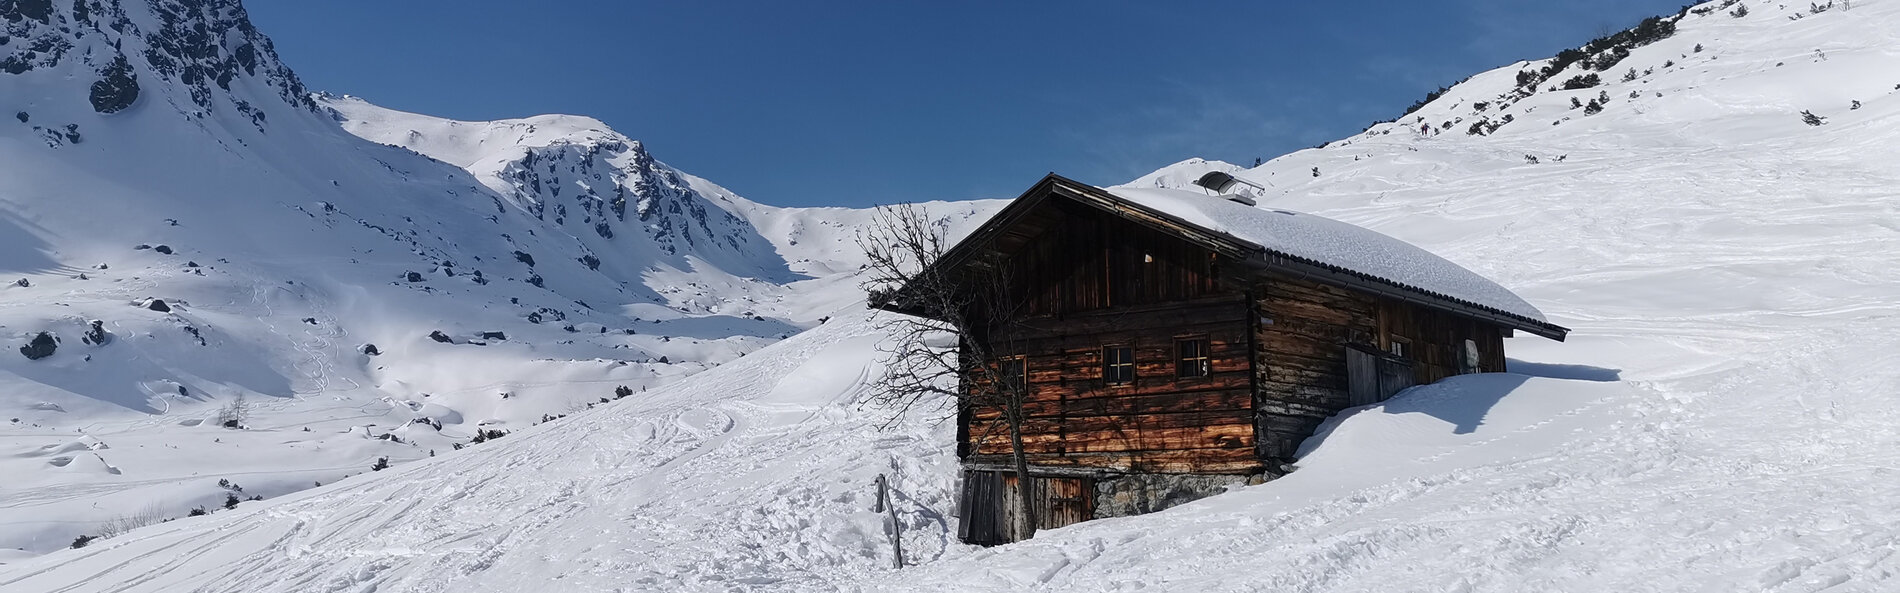 Almhütte oberhalb der Waldgrenze in tief verschneiter Winterlandschaft mit zahlreichen Skispuren. © C. Silberberger, Wildschönau Tourismus